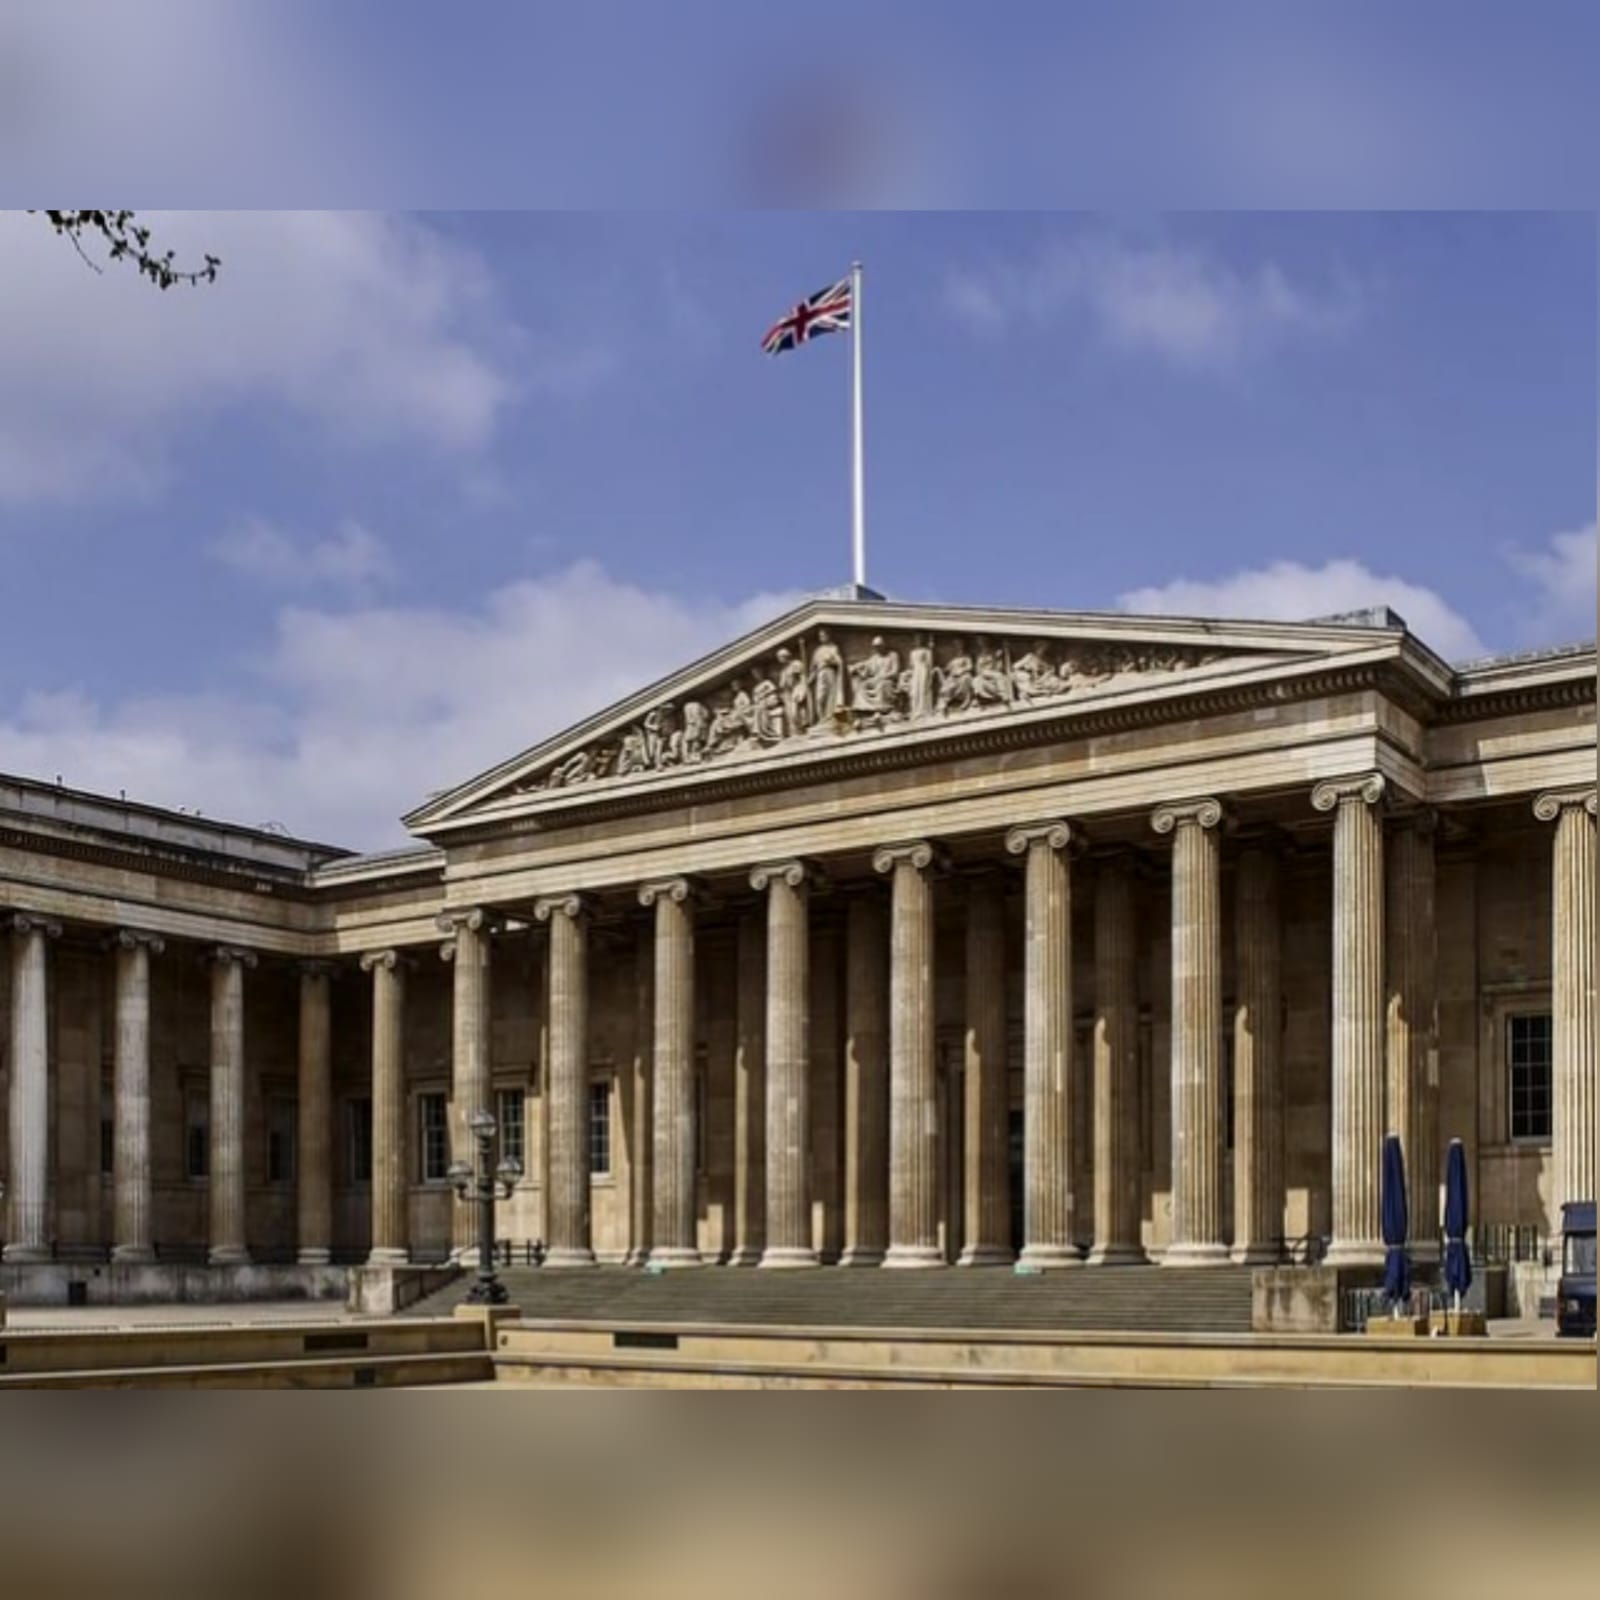 Duemila opere rubate dal British Museum: le dimissioni del direttore Fischer